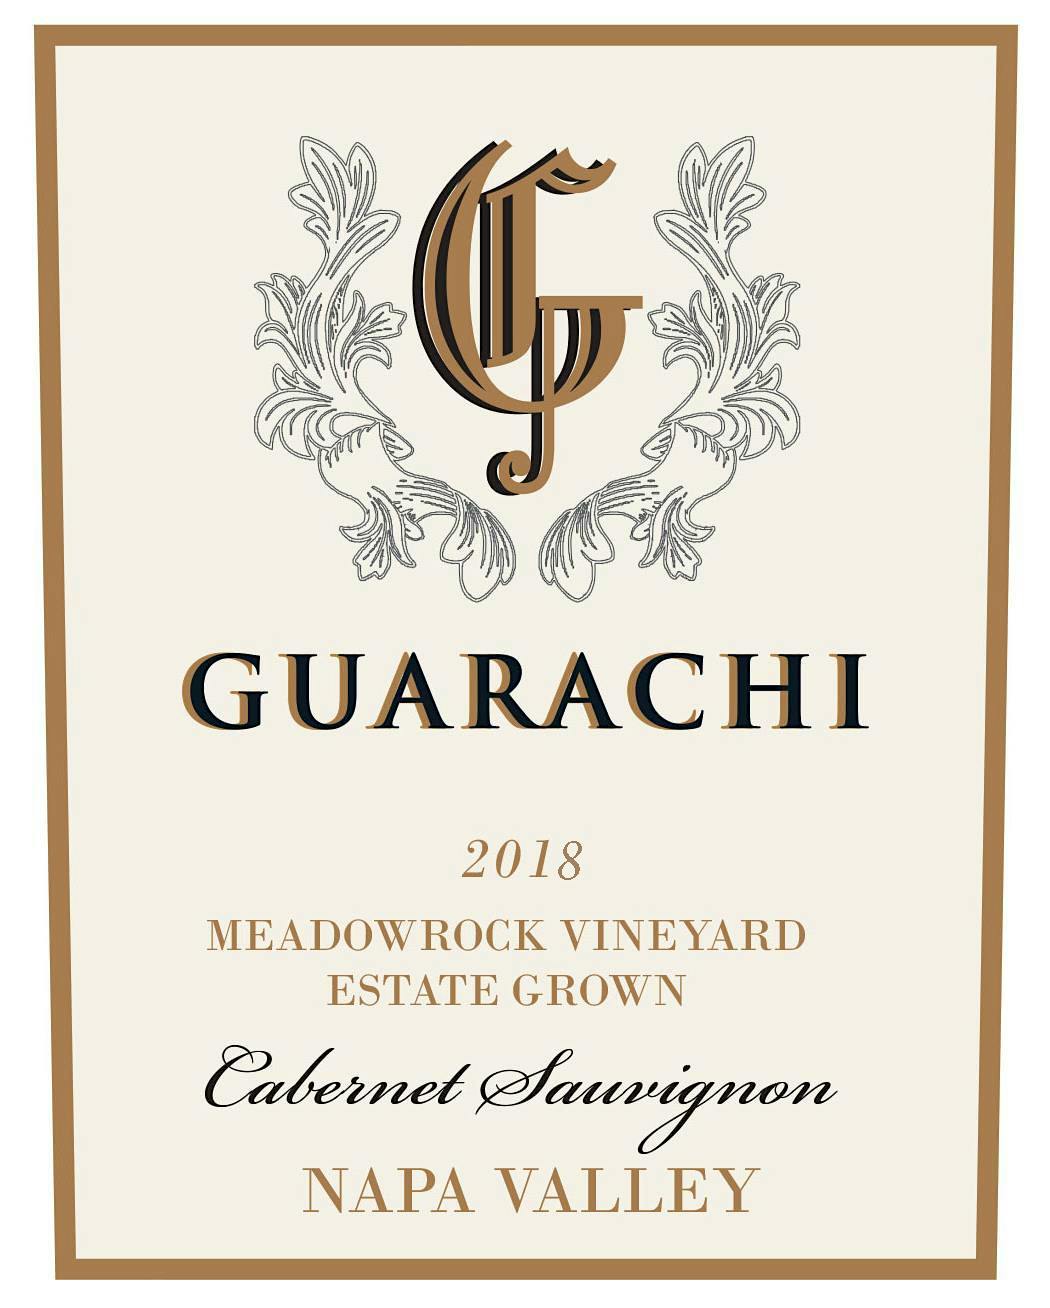 Label for Guarachi